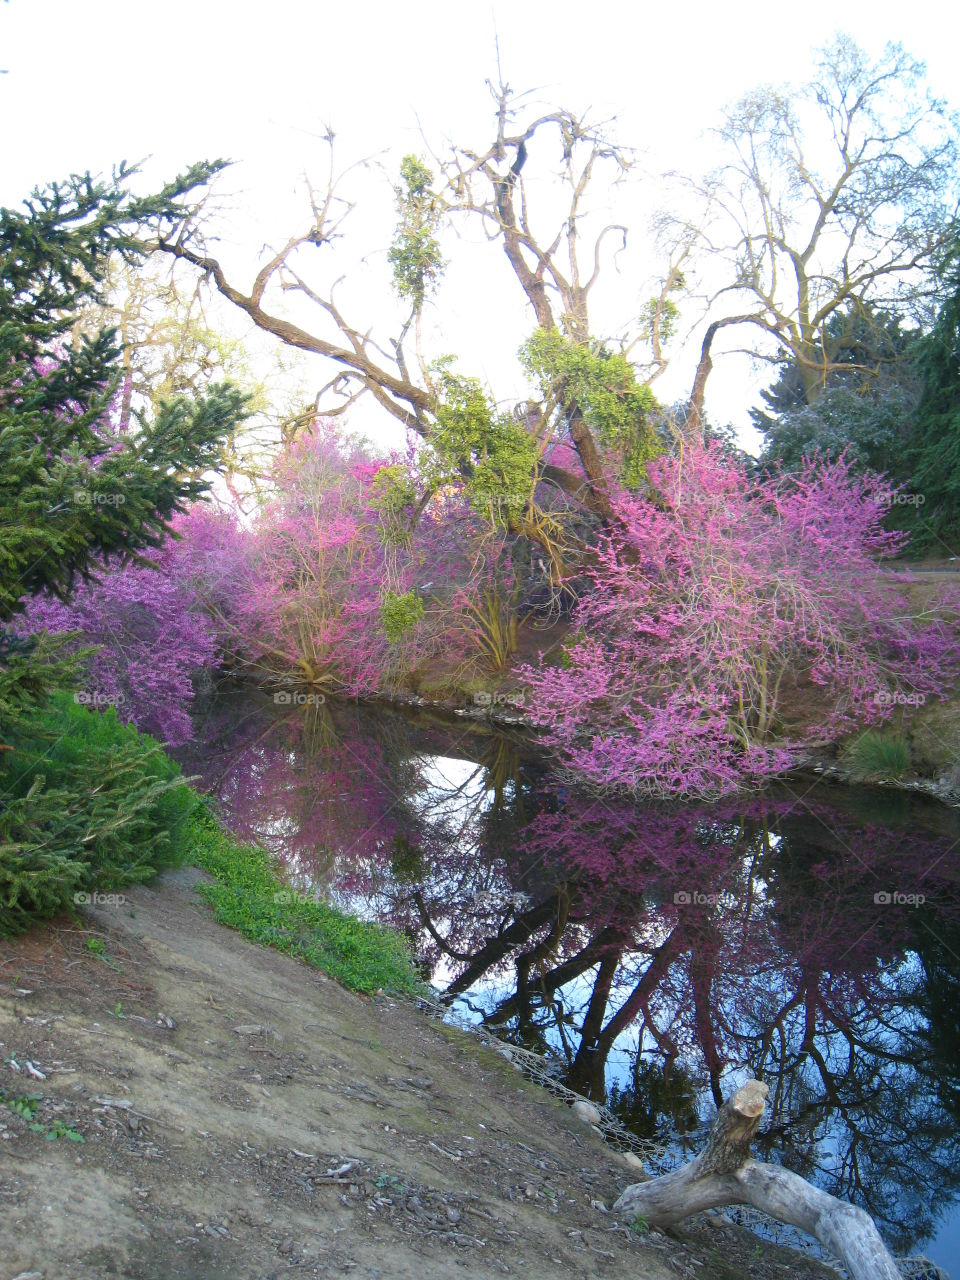 UC Davis arboretum